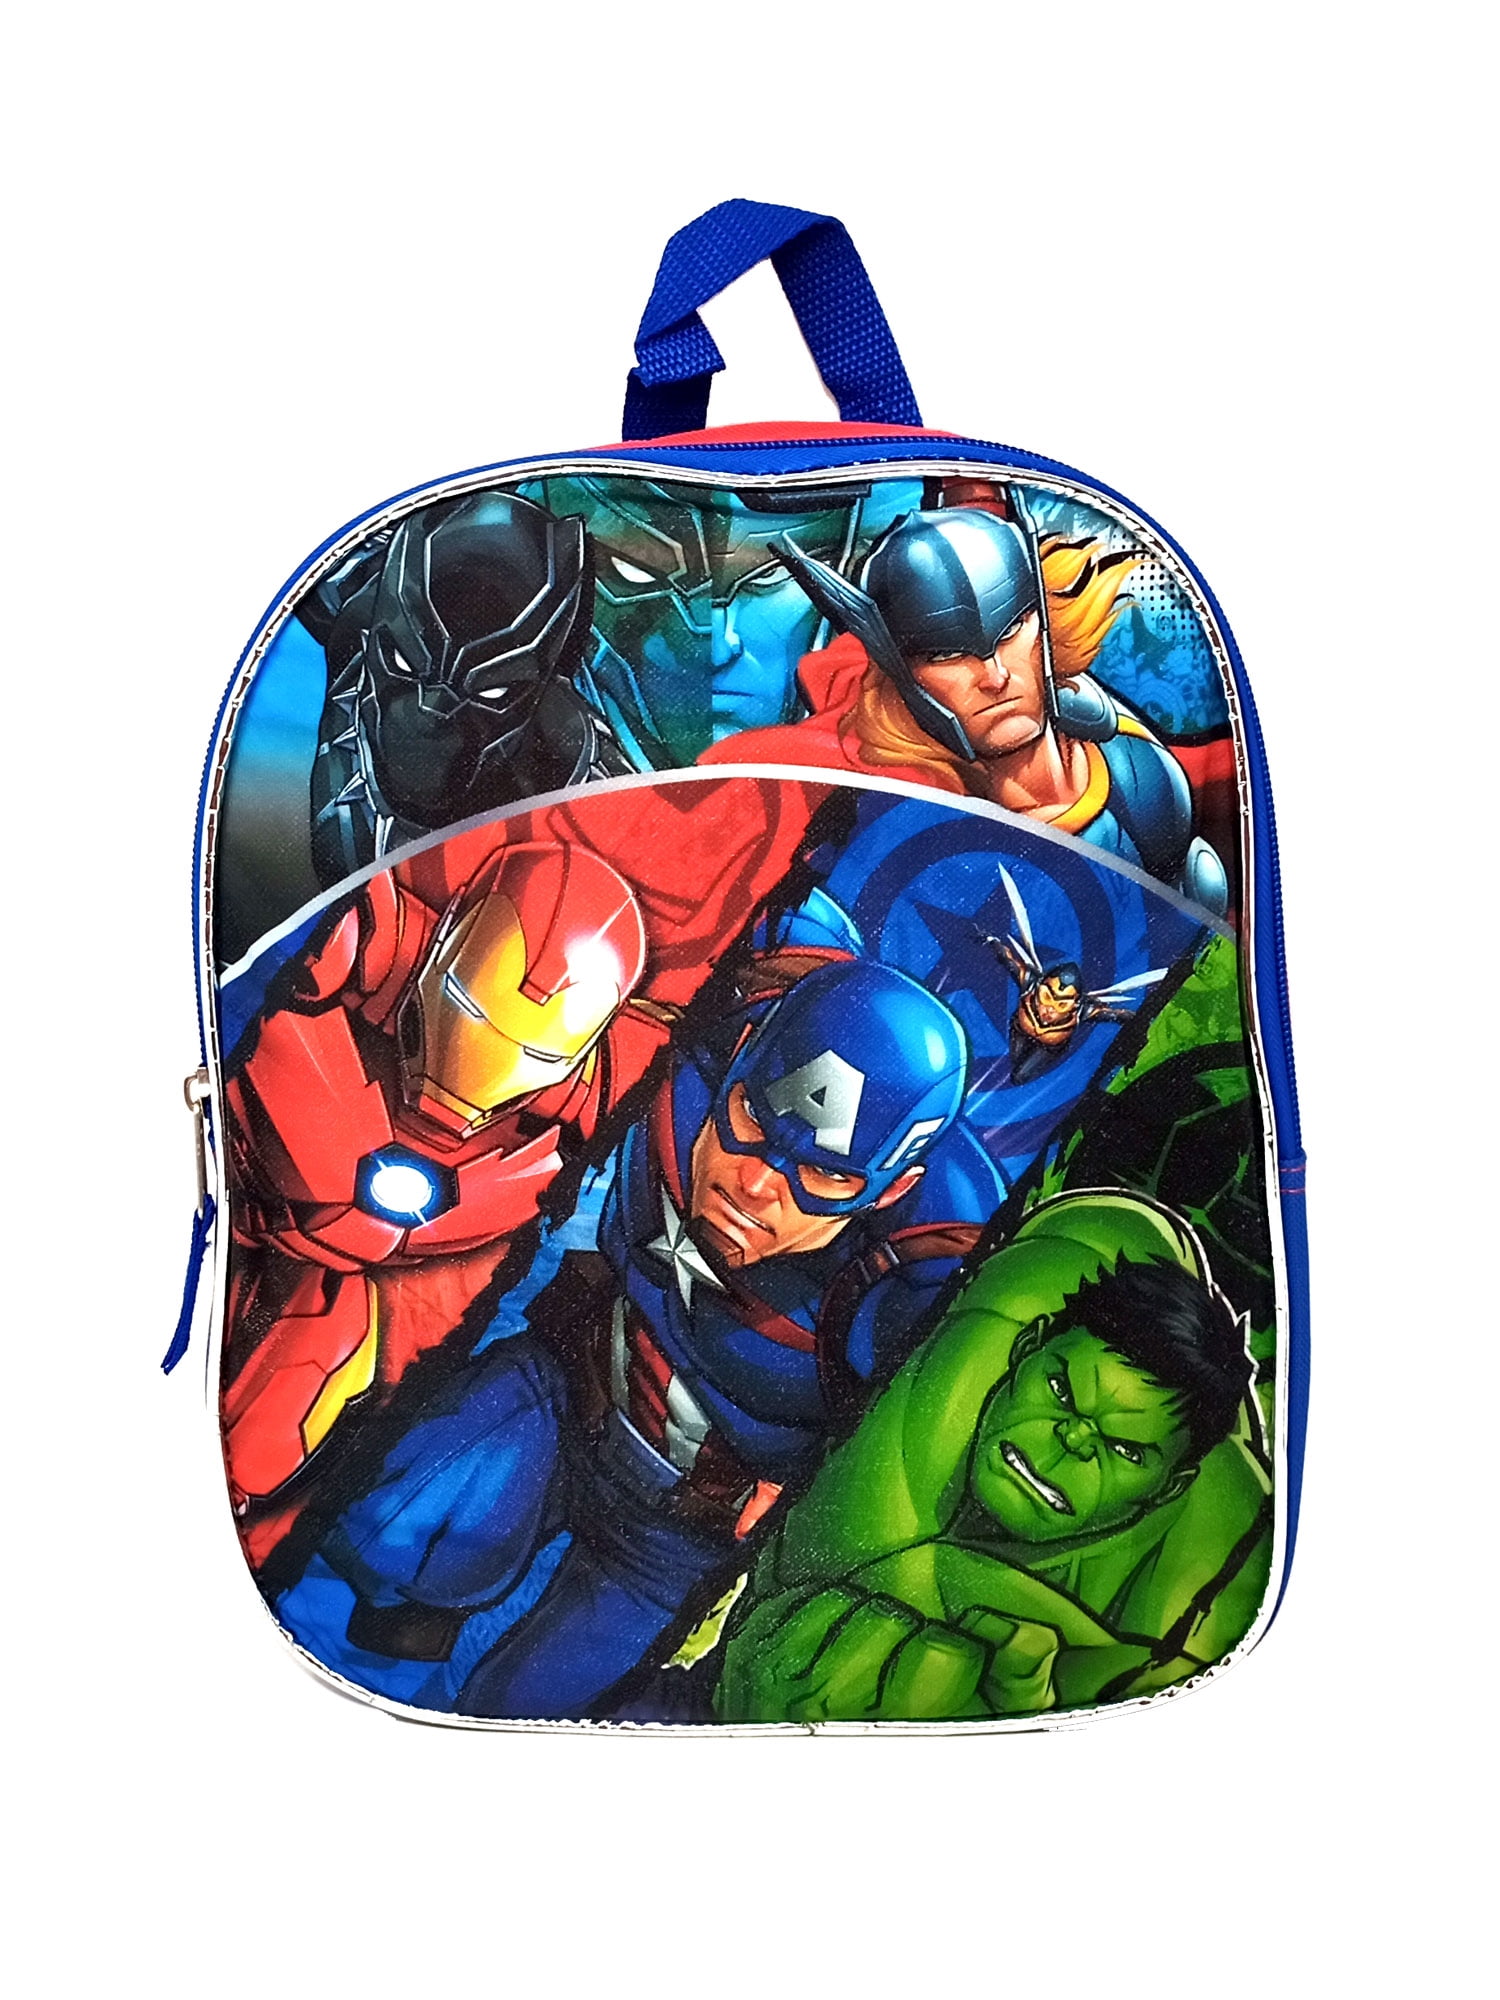 Buy Marvel Avengers Backpack Iron Man Thor Hulk Captain America Travel  School 16